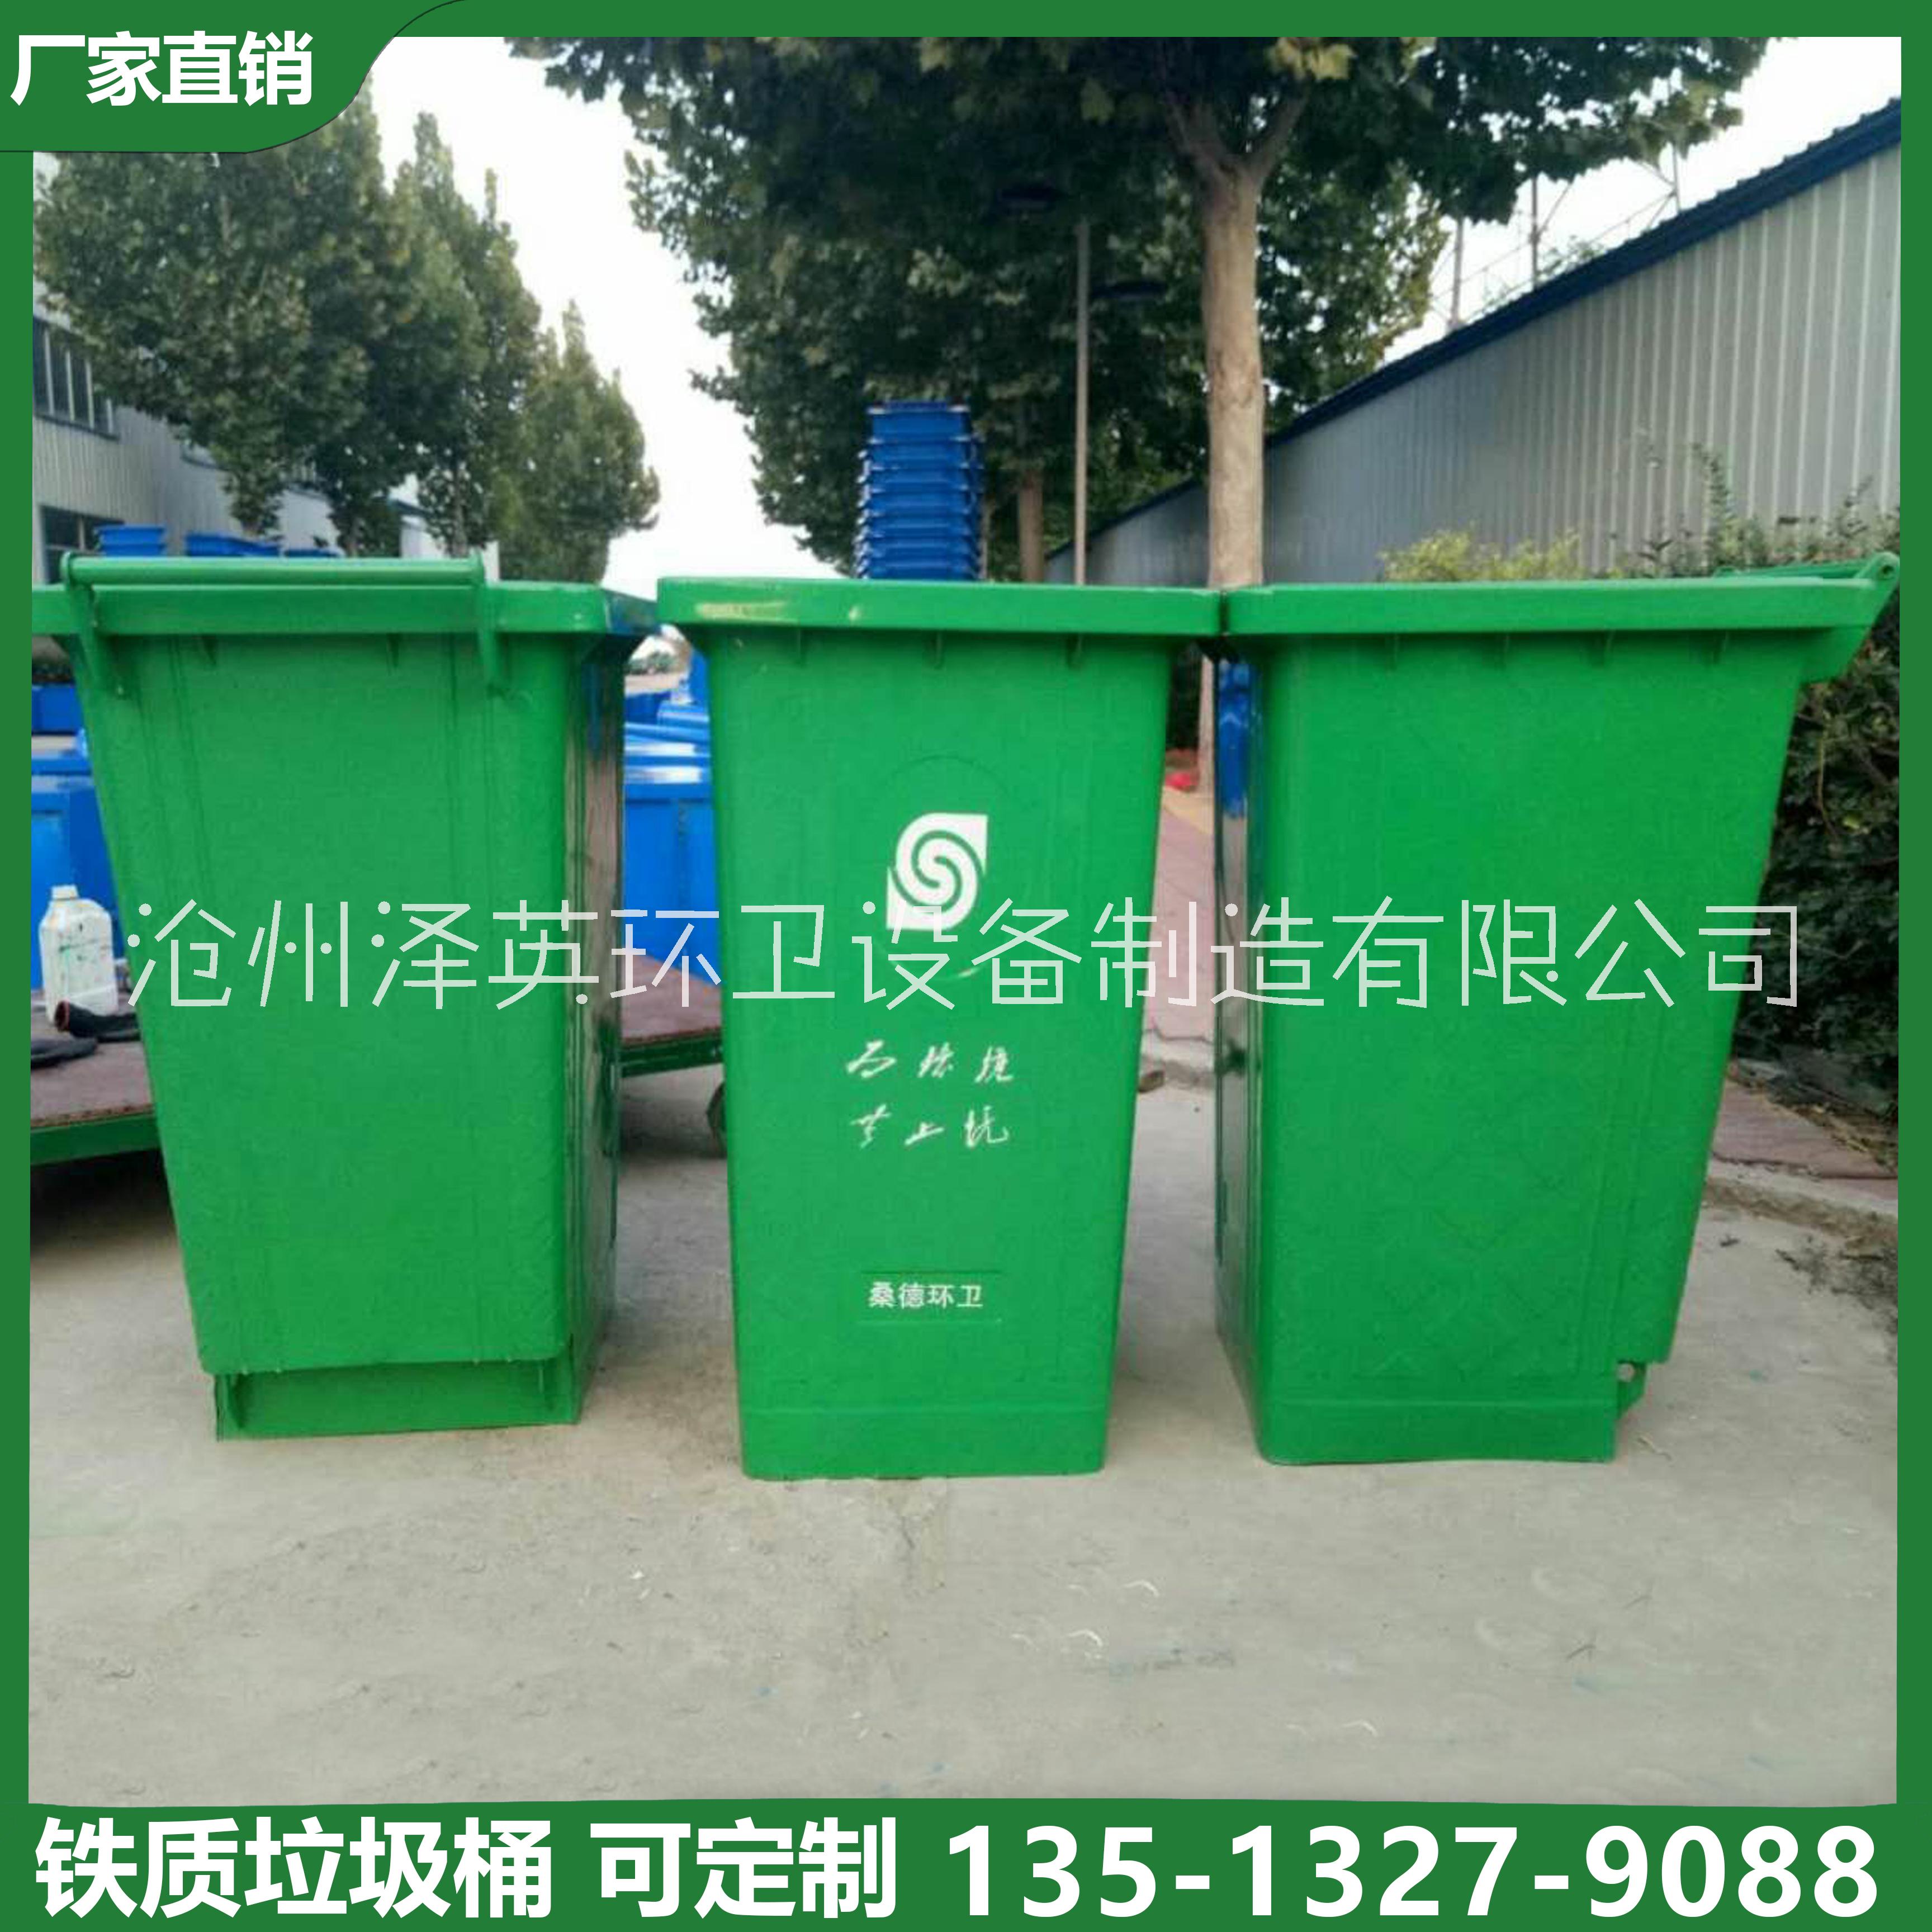 垃圾桶240l 240L铁质挂车垃圾桶镀锌垃圾桶分类垃圾桶图片